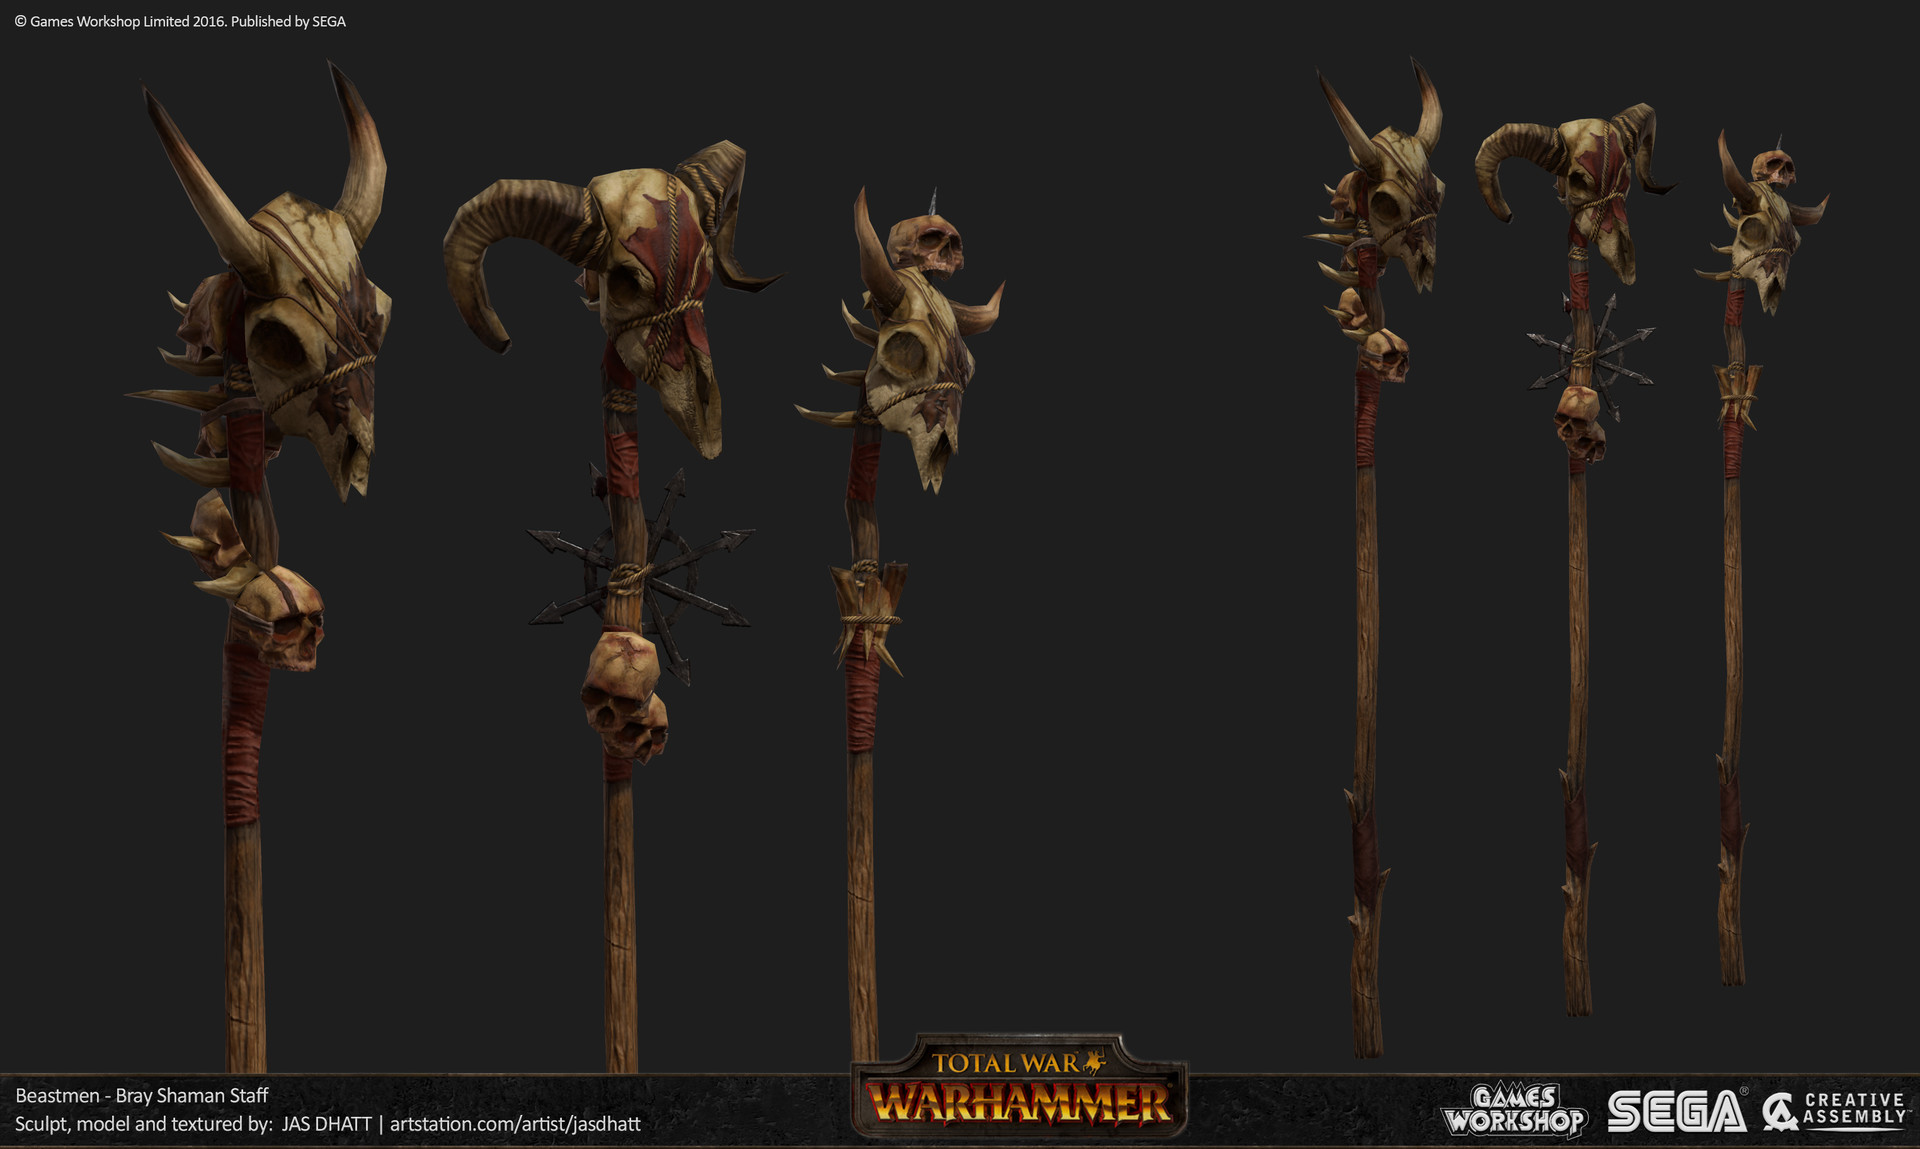 Fine Art: The Art Of Total War: Warhammer